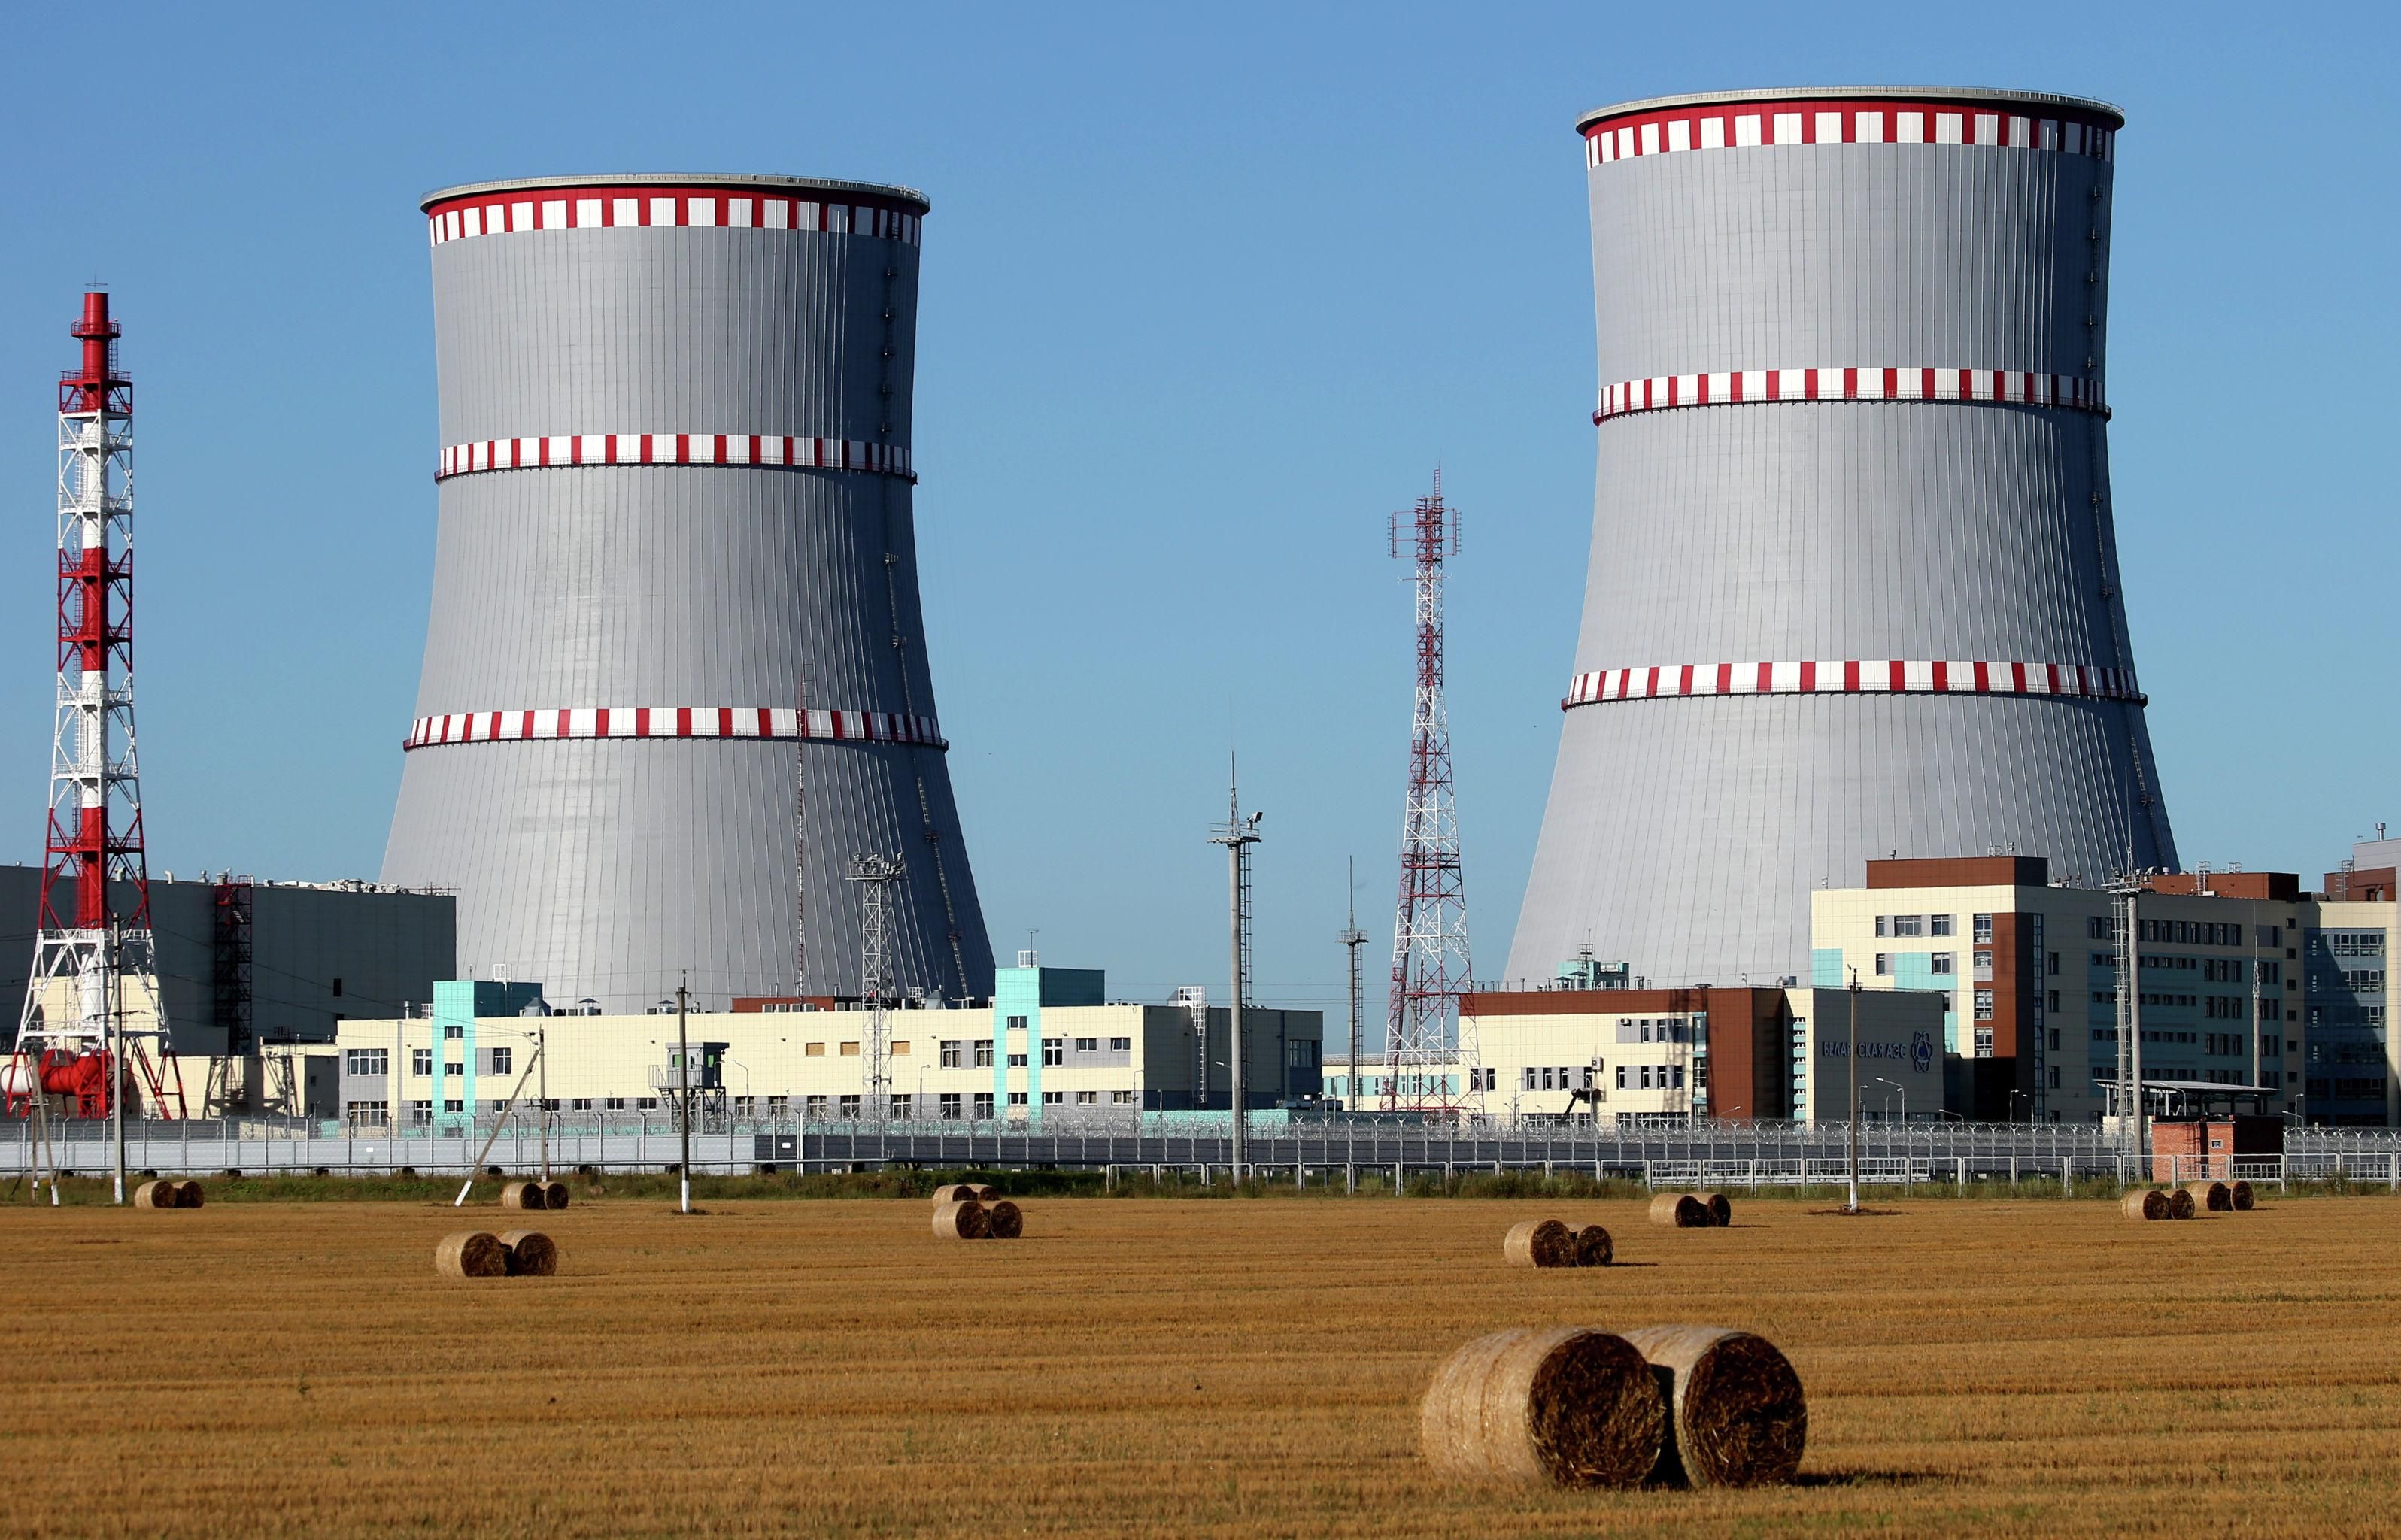 © ФОТО : НАТАЛИЯ ФЕДОСЕНКО / ТАСС Вид на Белорусскую атомную электростанцию (БелАЭС)